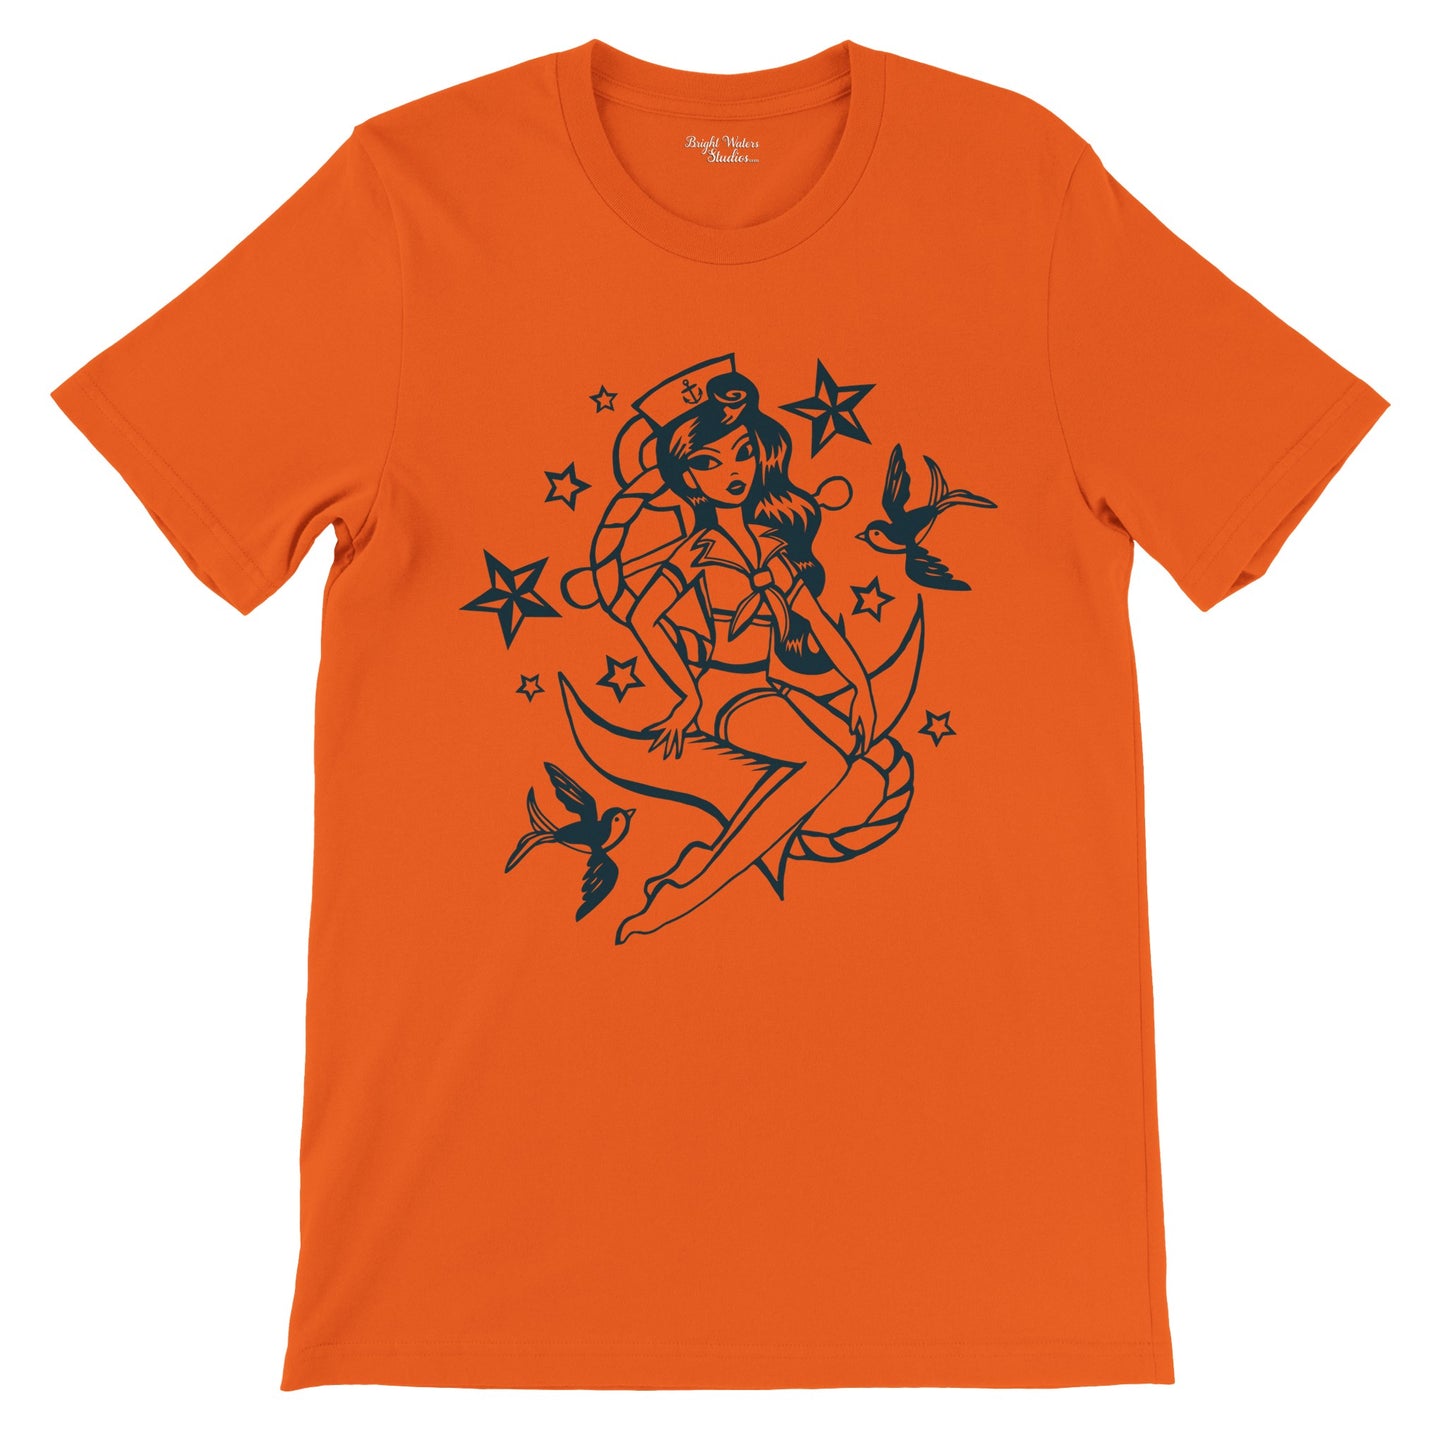 Pin-up Sailor T-shirt